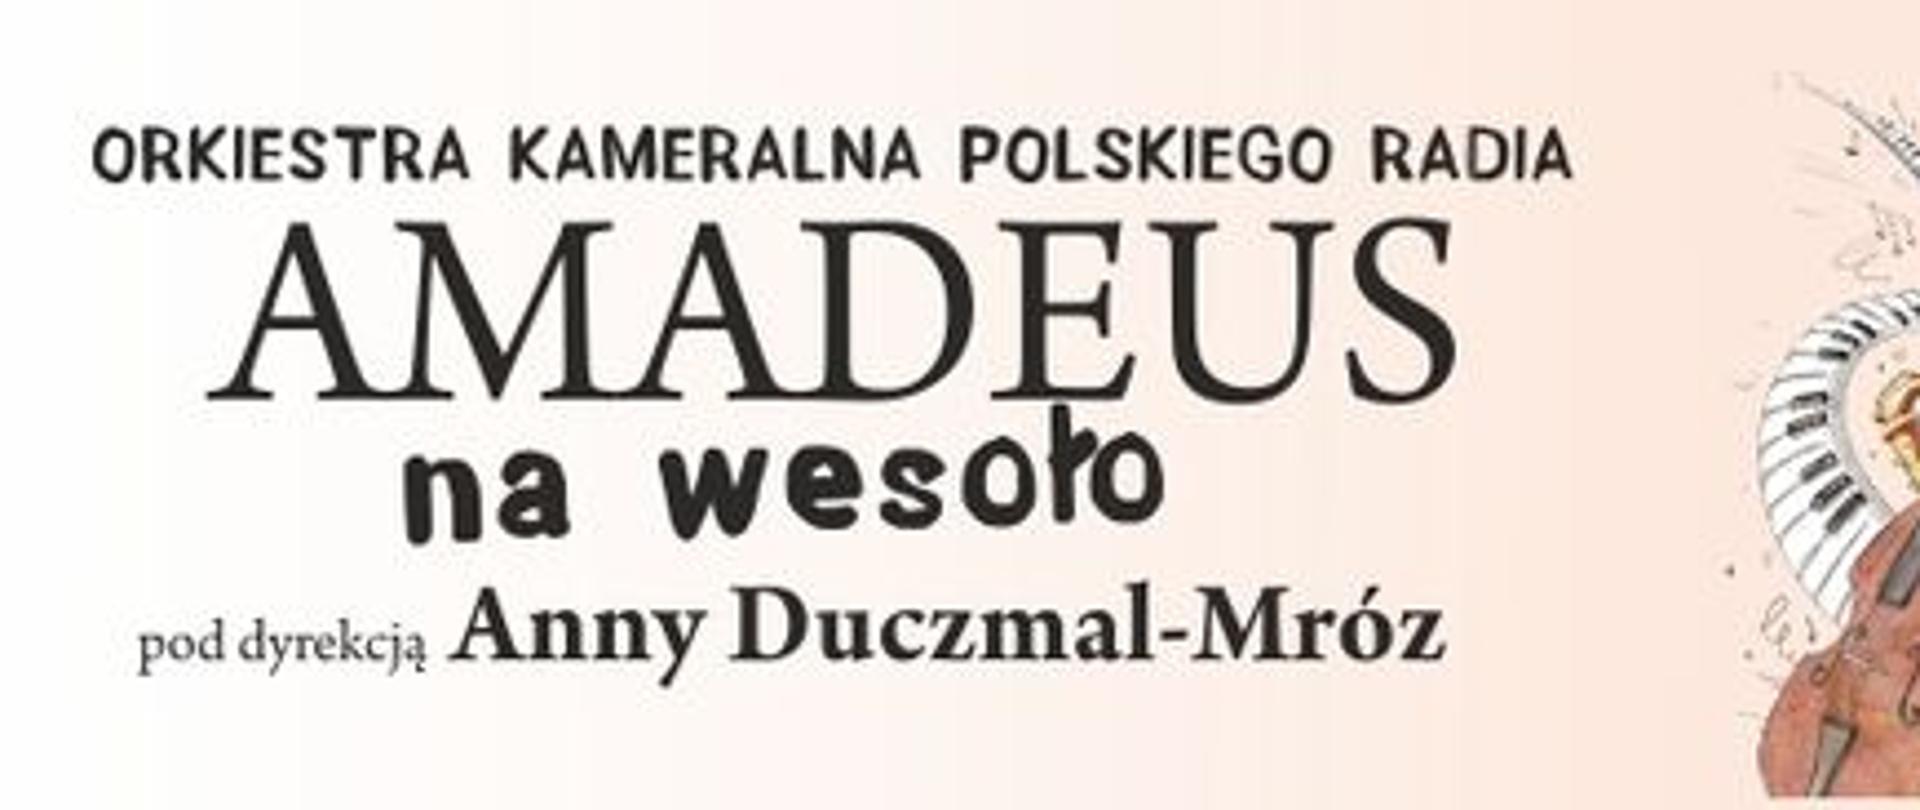 Baner przedstawia napis Orkiestra Kameralna Polskiego Radia AMADEUS na wesoło pod dyrekcją Anny Duczmal-Mróz na jasnoróżowym tle. W prawym rogu grafika z klawiaturą i wiolonczelą.